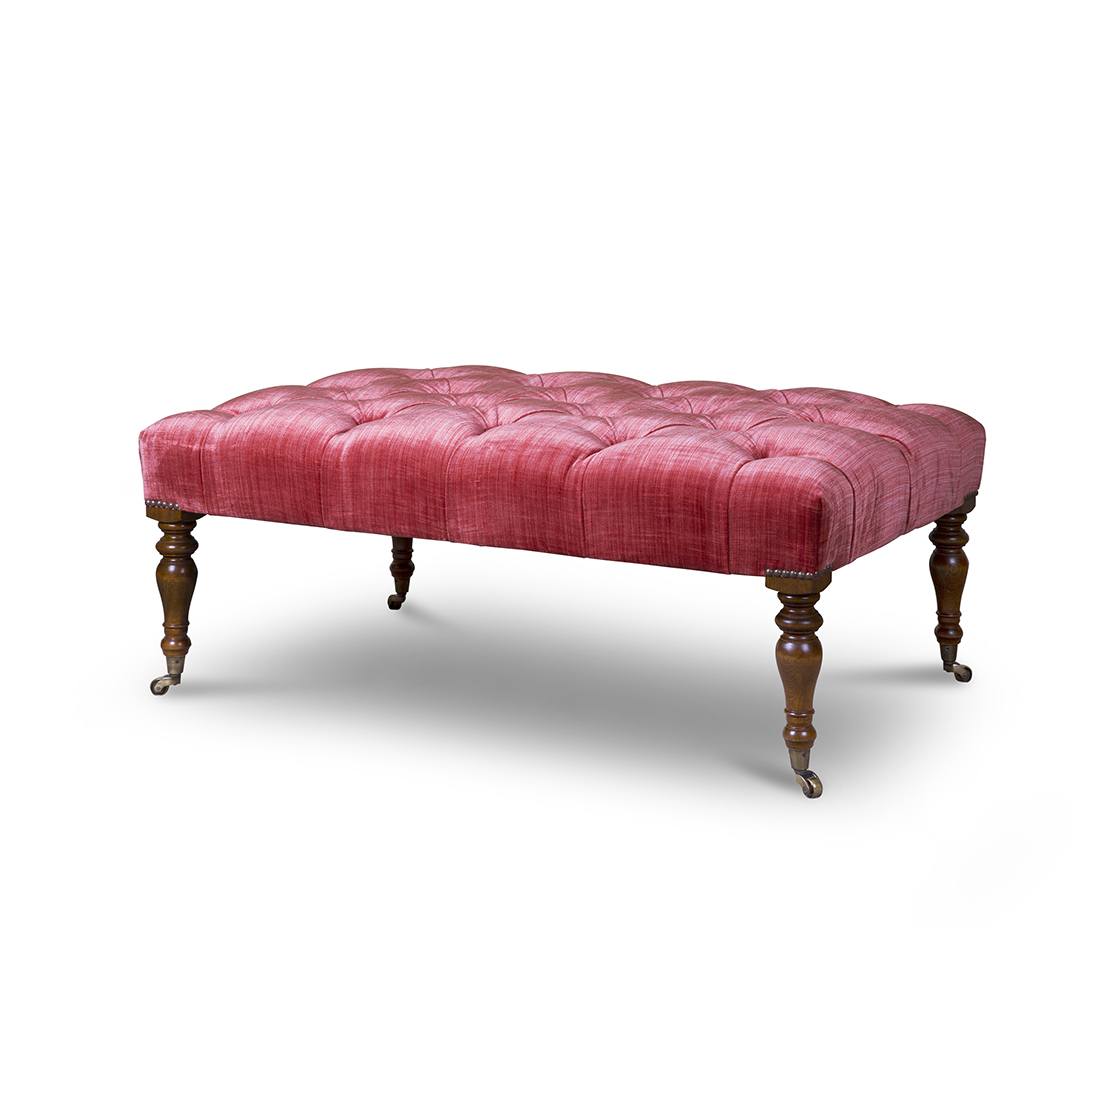 Victorian footstool in Como silk velvet - Pompeiian red - Beaumont & Fletcher